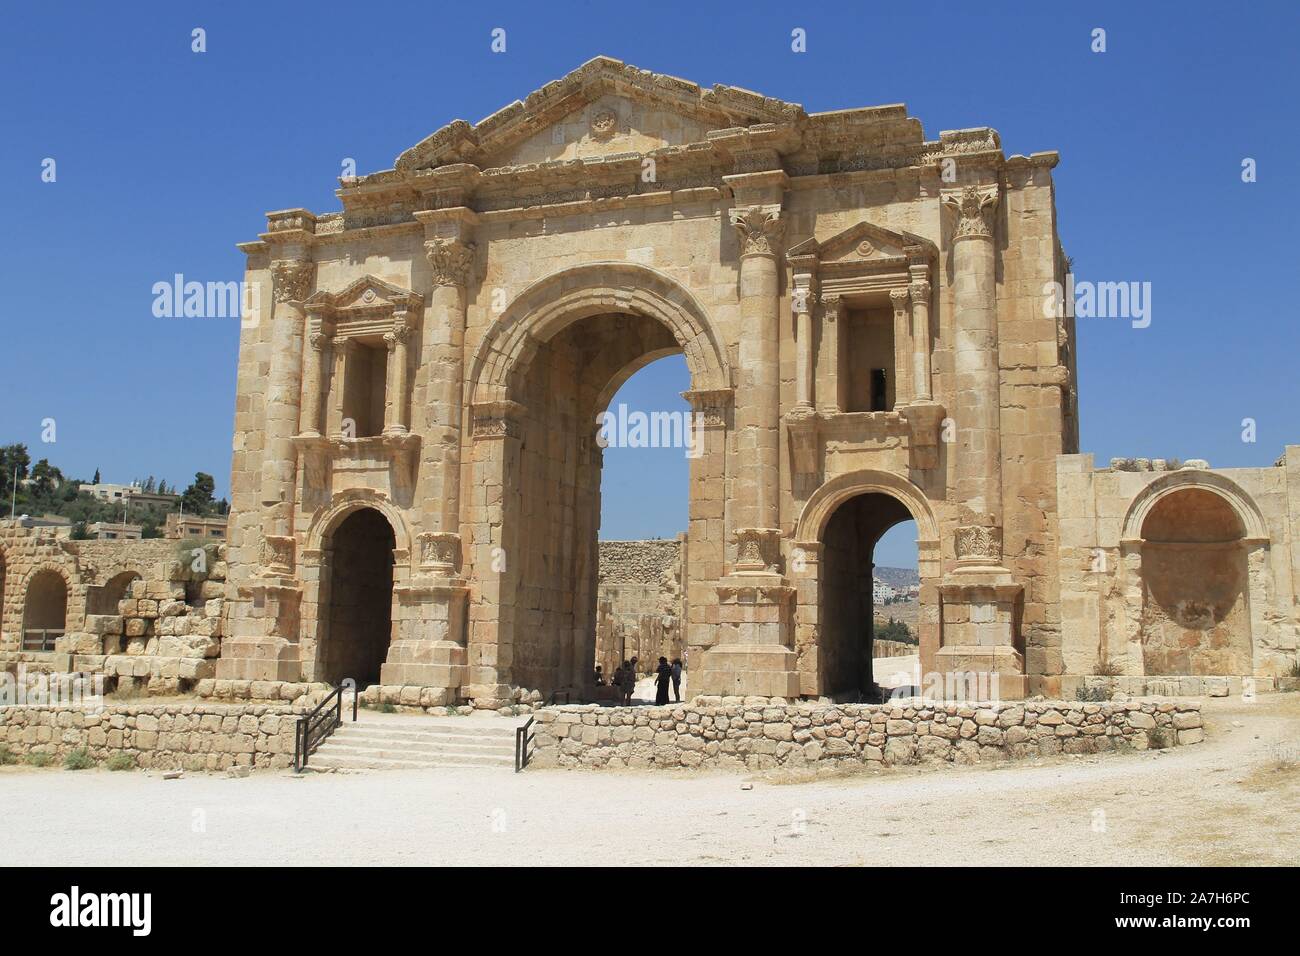 JORDANIA. JERASH AMMAN. Jerash , es el sitio de las ruinas de la ciudad grecorromana de Gerasa, también conocida como Antioquía en el Río Dorado. Jerash es considerada una de las ciudades romanas más importantes y mejor conservadas del Cercano Oriente. Era una ciudad de la Decápolis.. ARCO DE ADRIANO . EREGIDO CON MOTIVO DE LA VISITA DEL EMPERADOR ADRIANO EN EL 129-130. Stock Photo